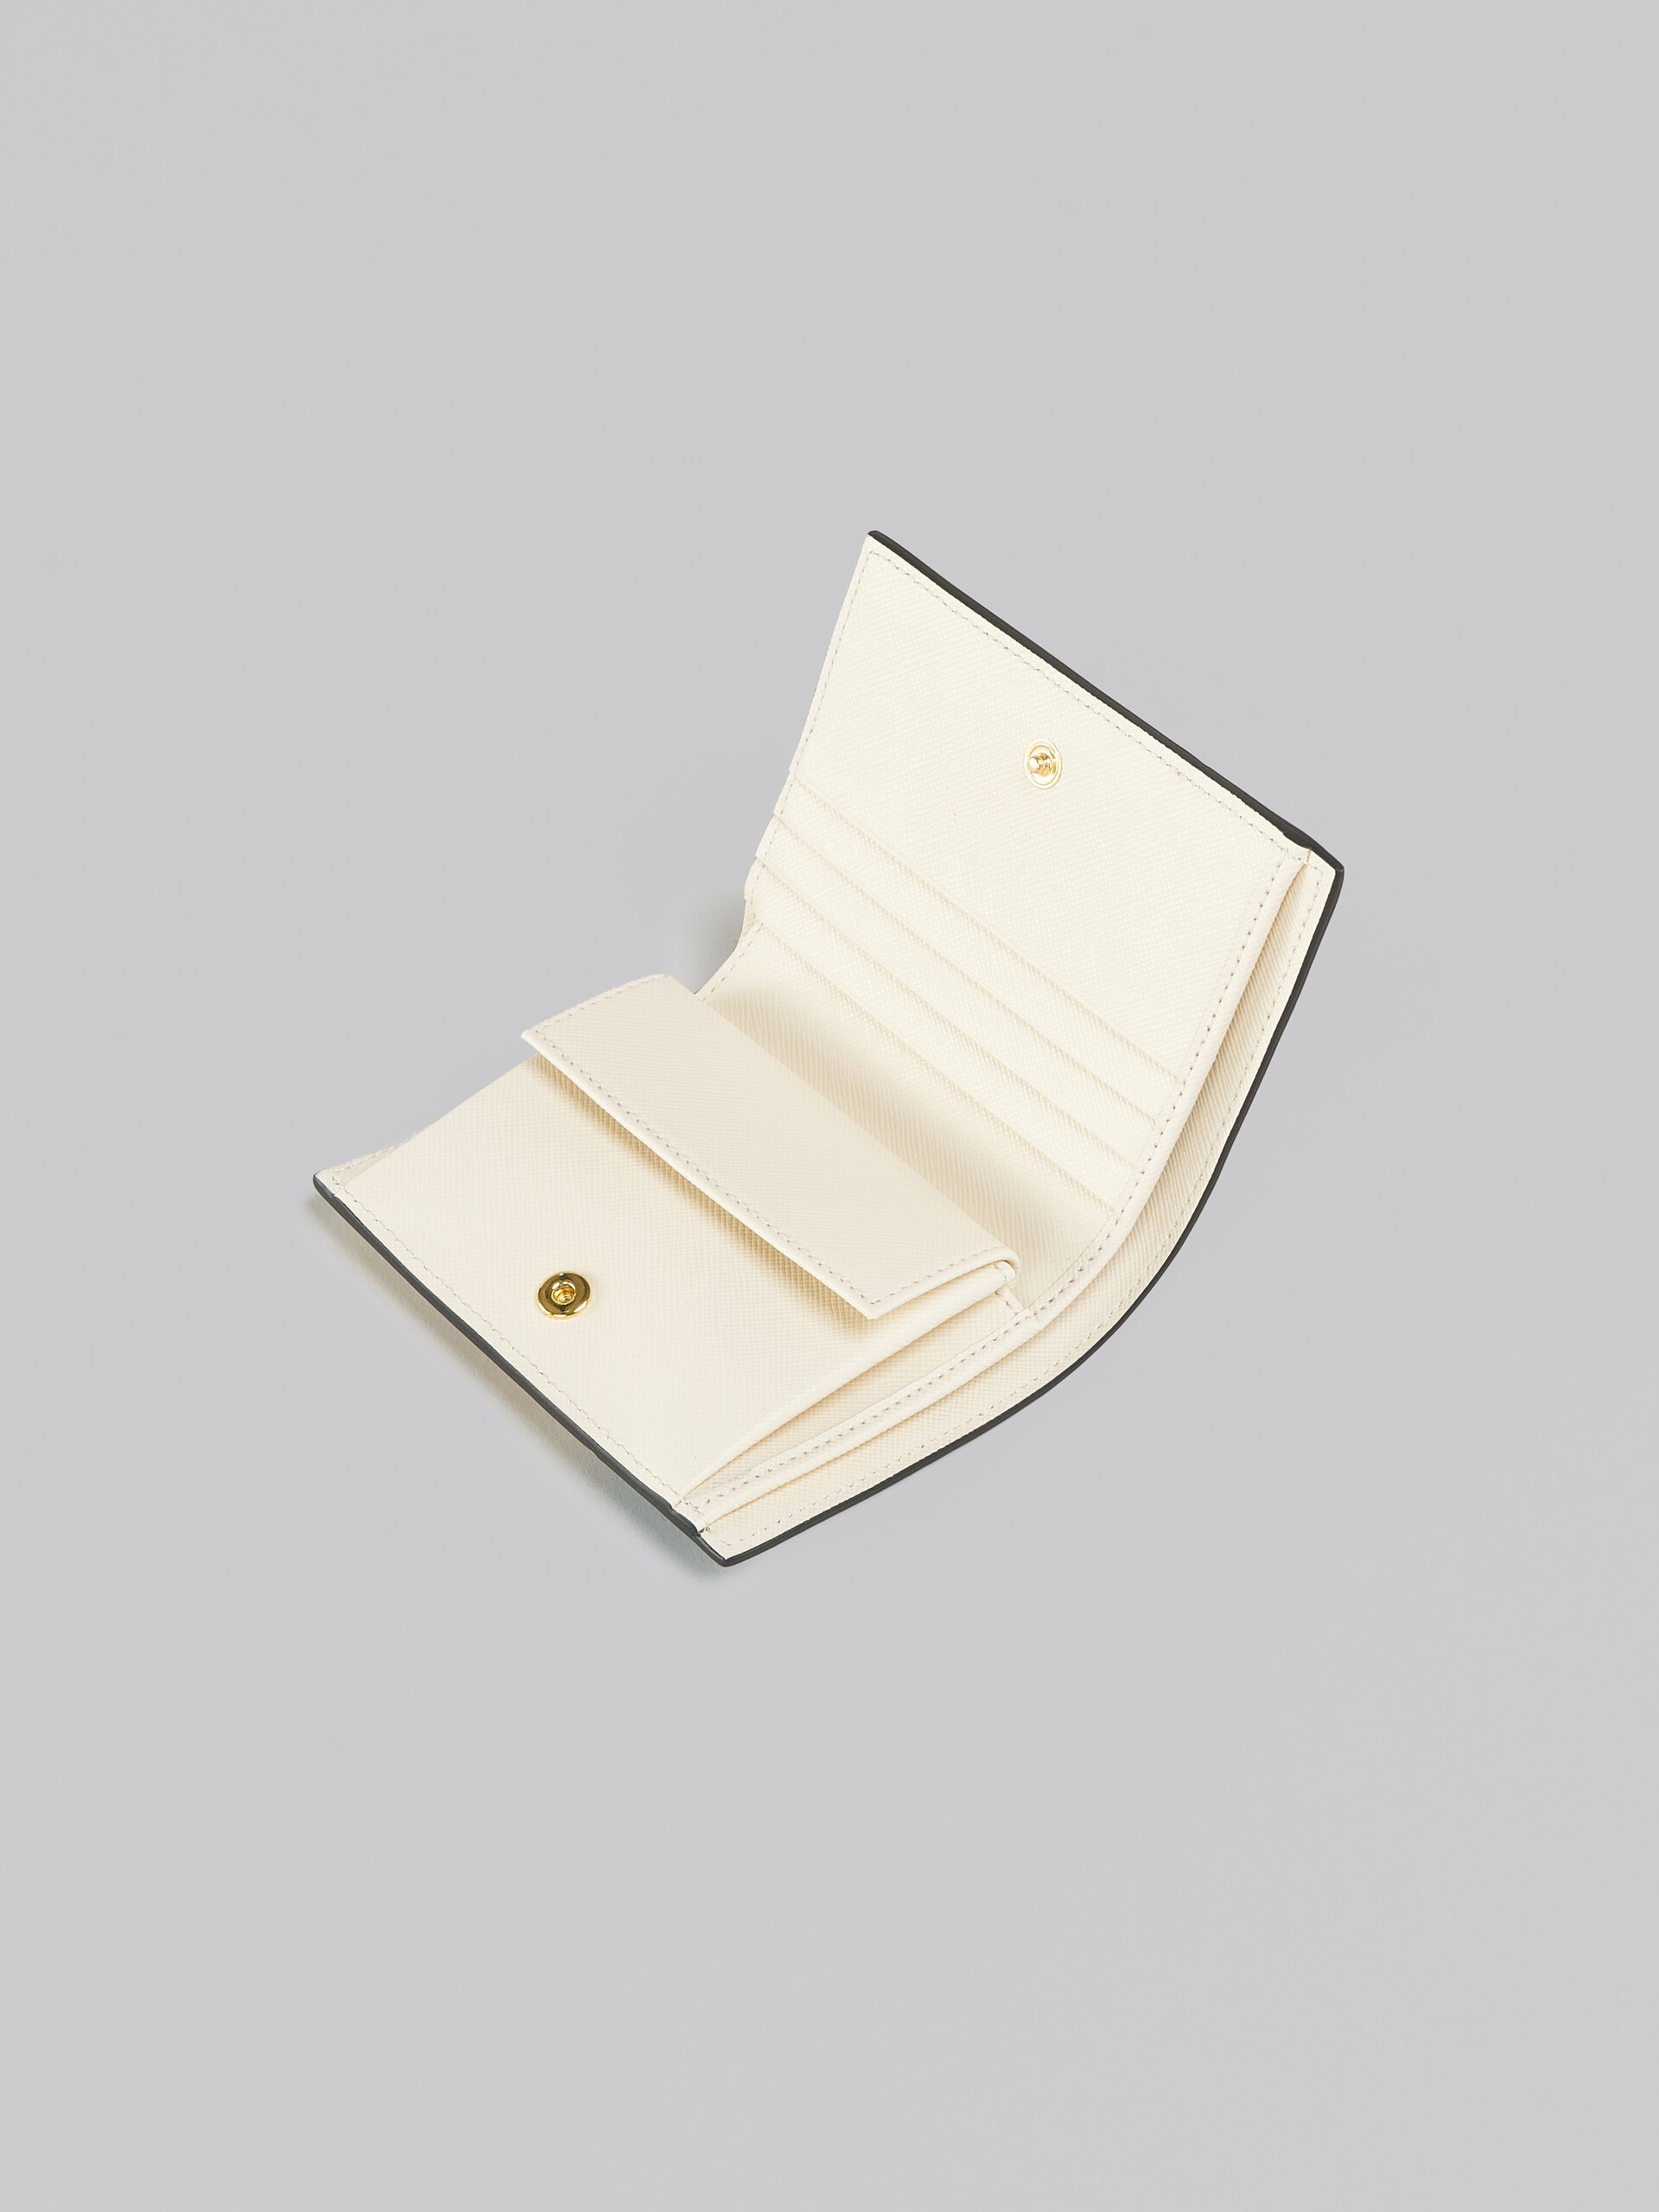 ブルー、ホワイト、ブラウン サフィアーノレザー製二つ折りウォレット - 財布 - Image 4